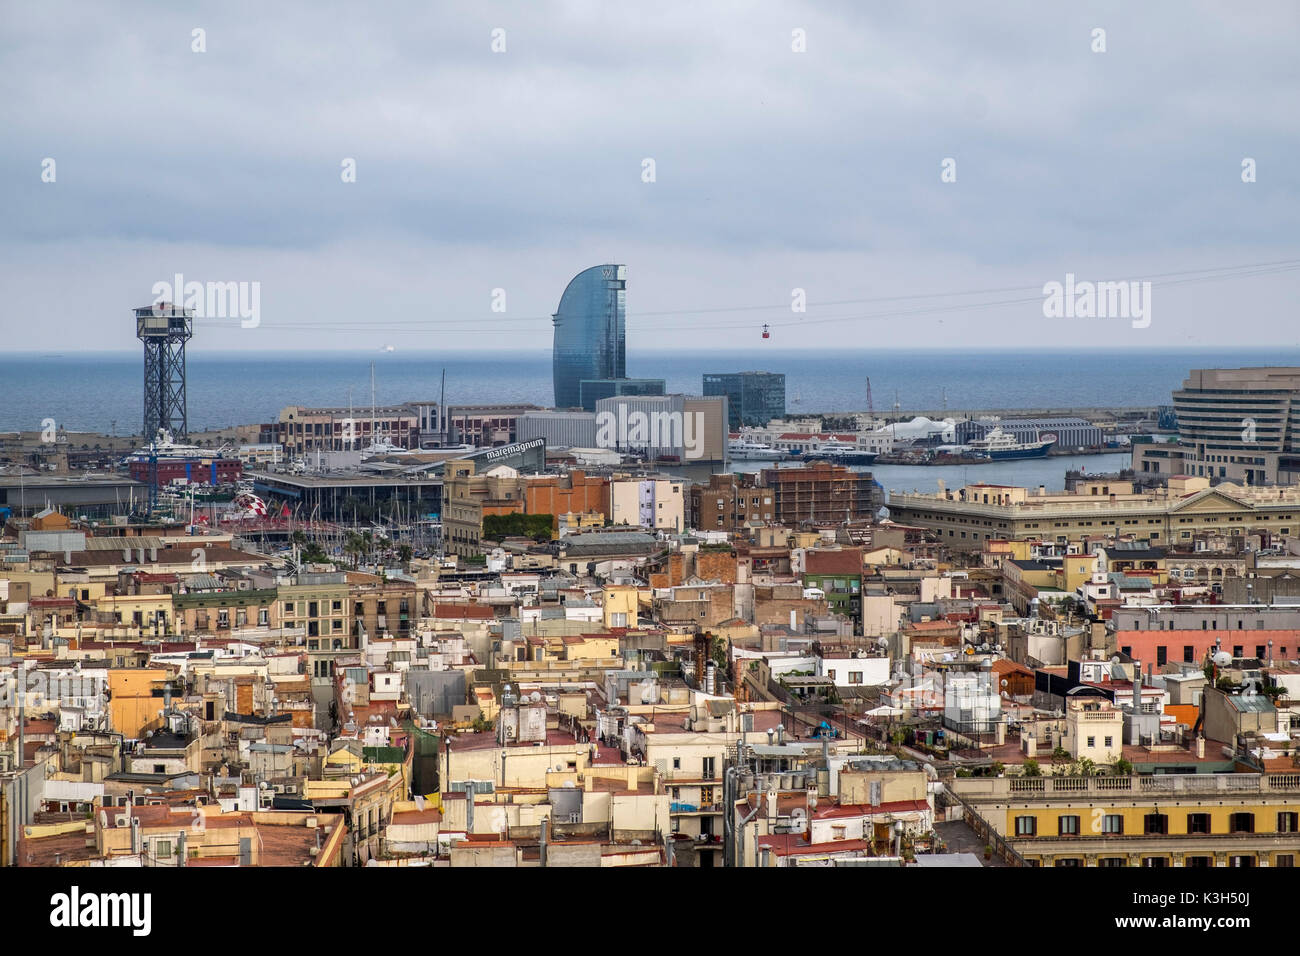 Vue panoramique de Barcelone depuis la tour de l'église Santa Maria del Pi, Catalogne, Espagne Banque D'Images